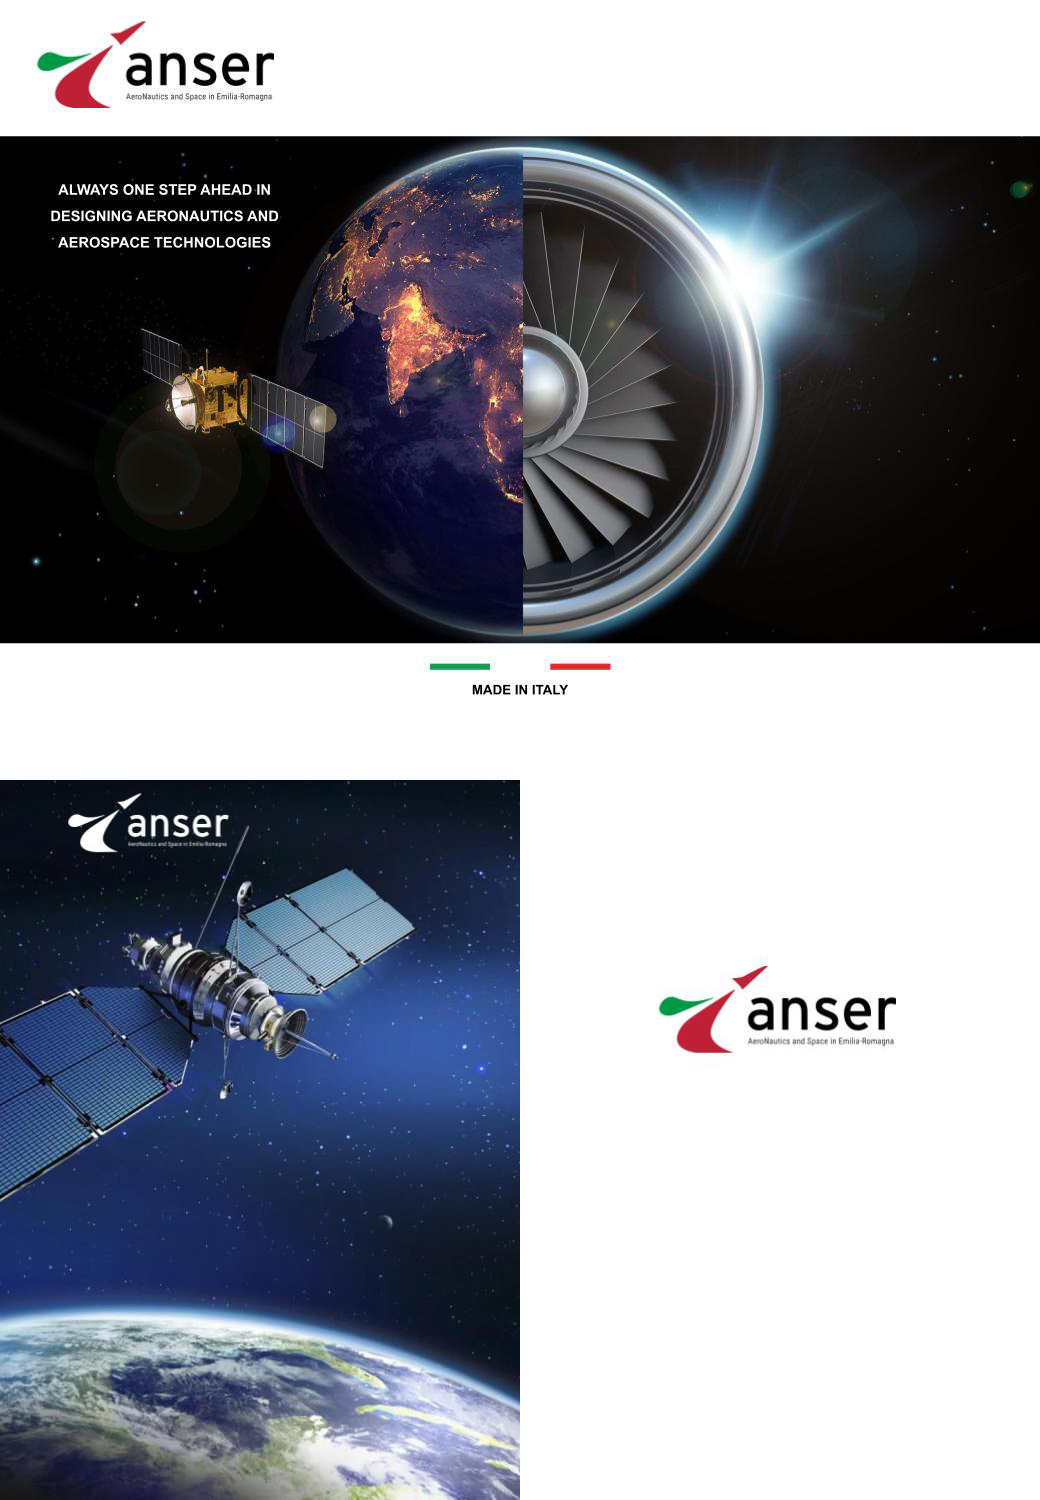 Ansa Tech joins ANSER consortium